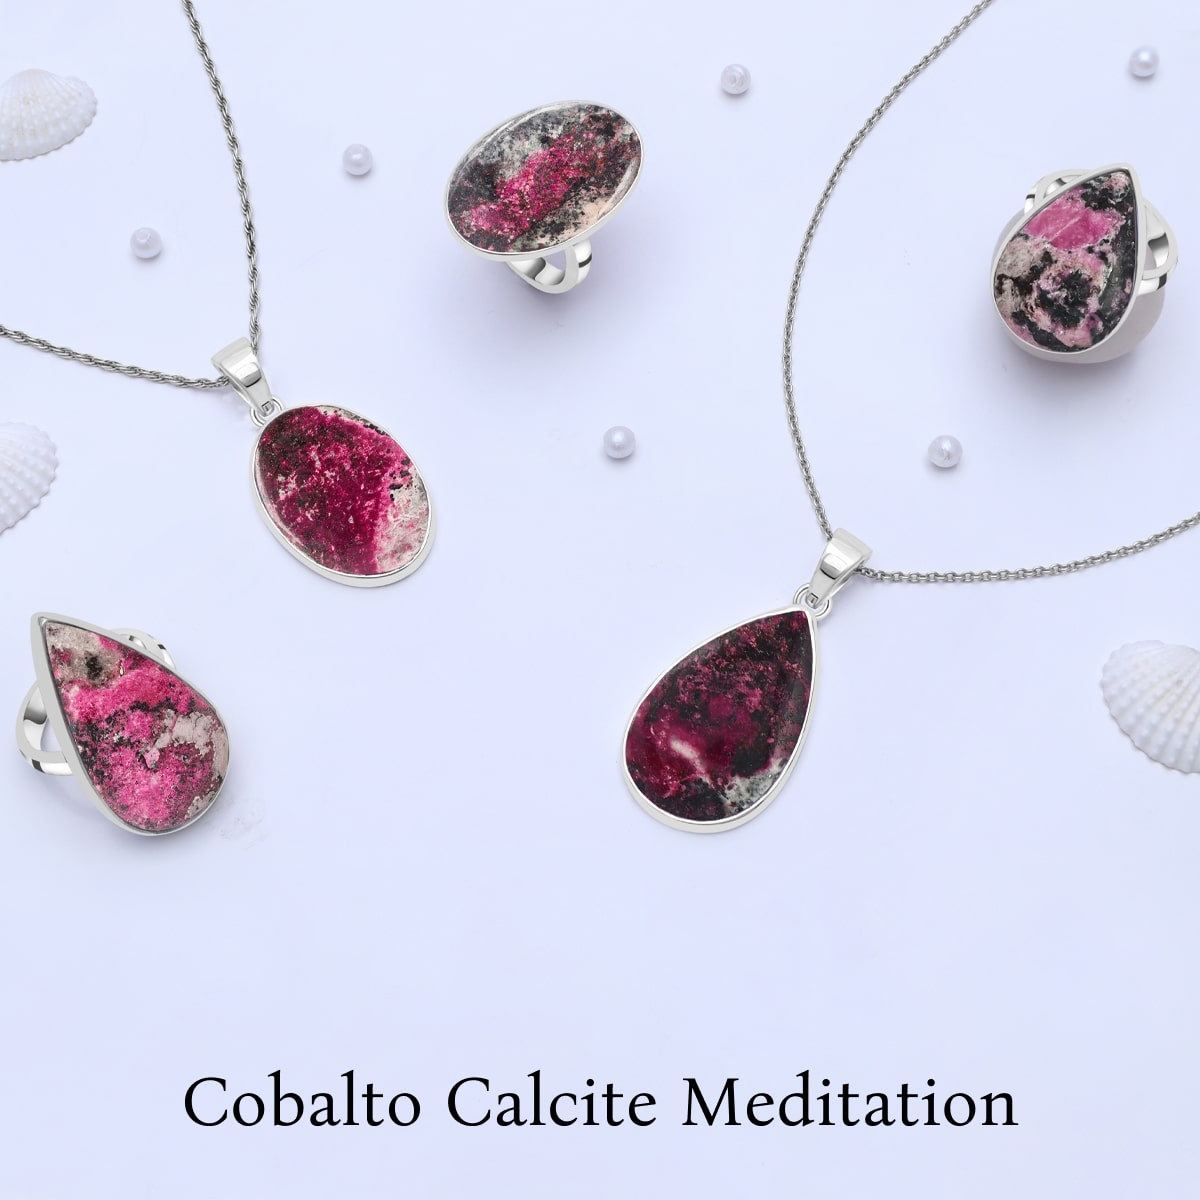 Cobalto Calcite Meditation and Grounding